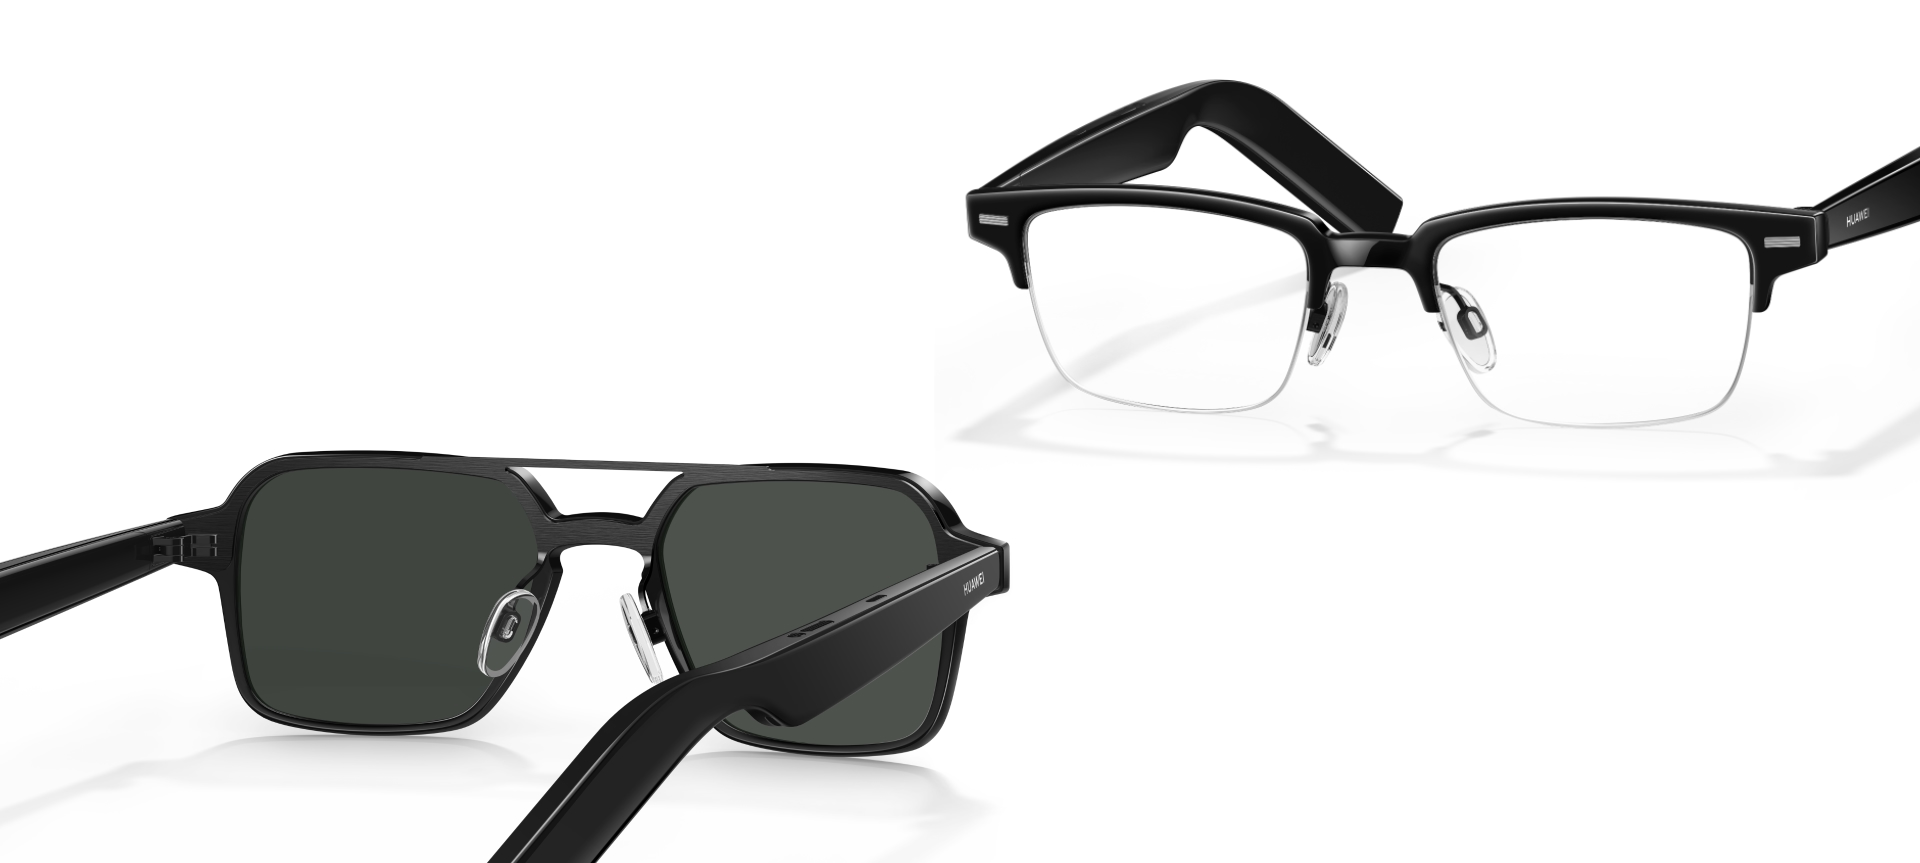 Inteligentne okulary Huawei Eyewear 2 z głośnikami i soczewkami Zeiss zadebiutowały na całym świecie